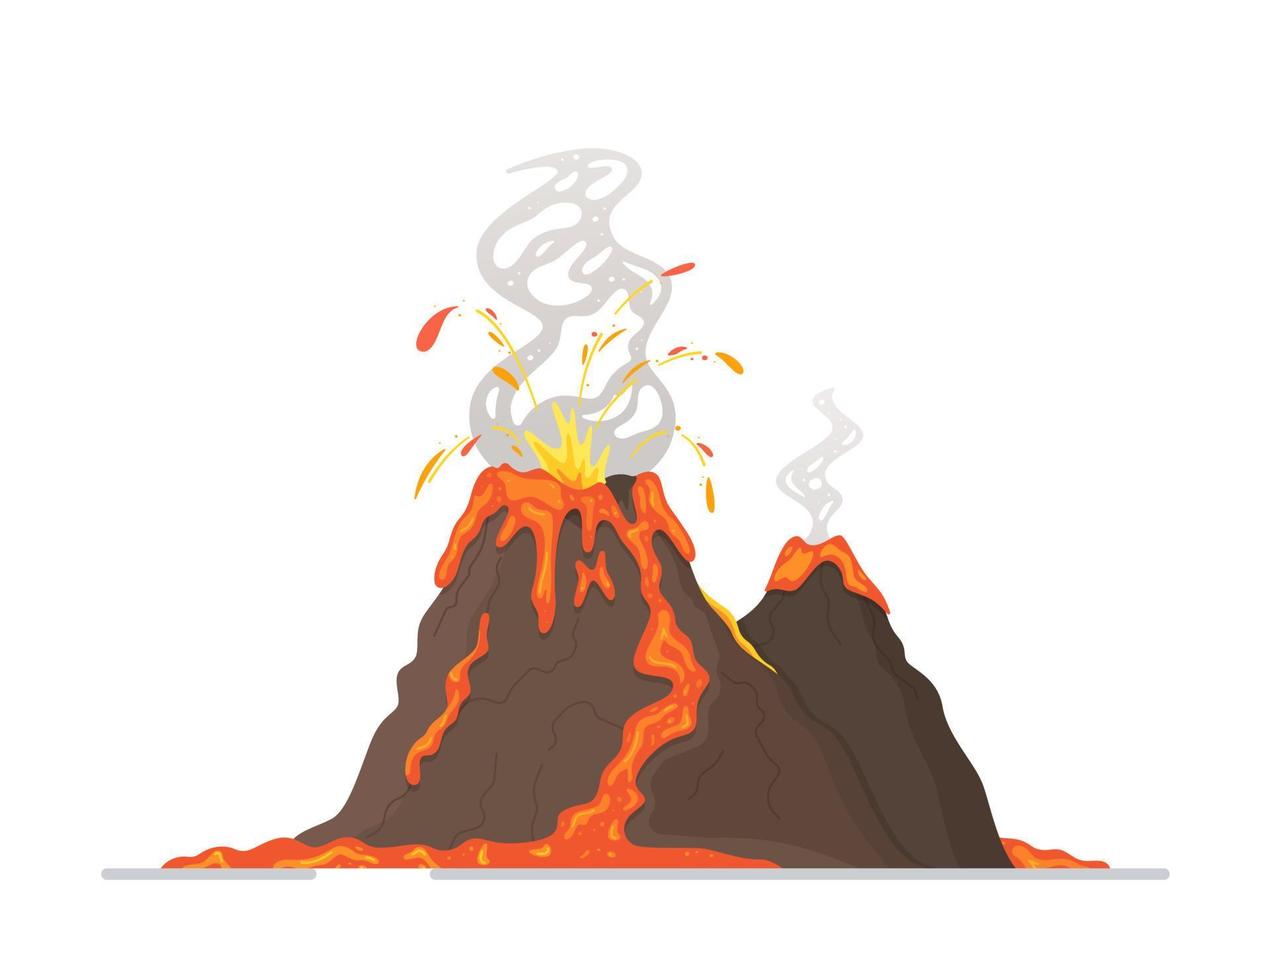 ilustração em vetor de um vulcão isolado. vulcão fumegante com lava fluindo.